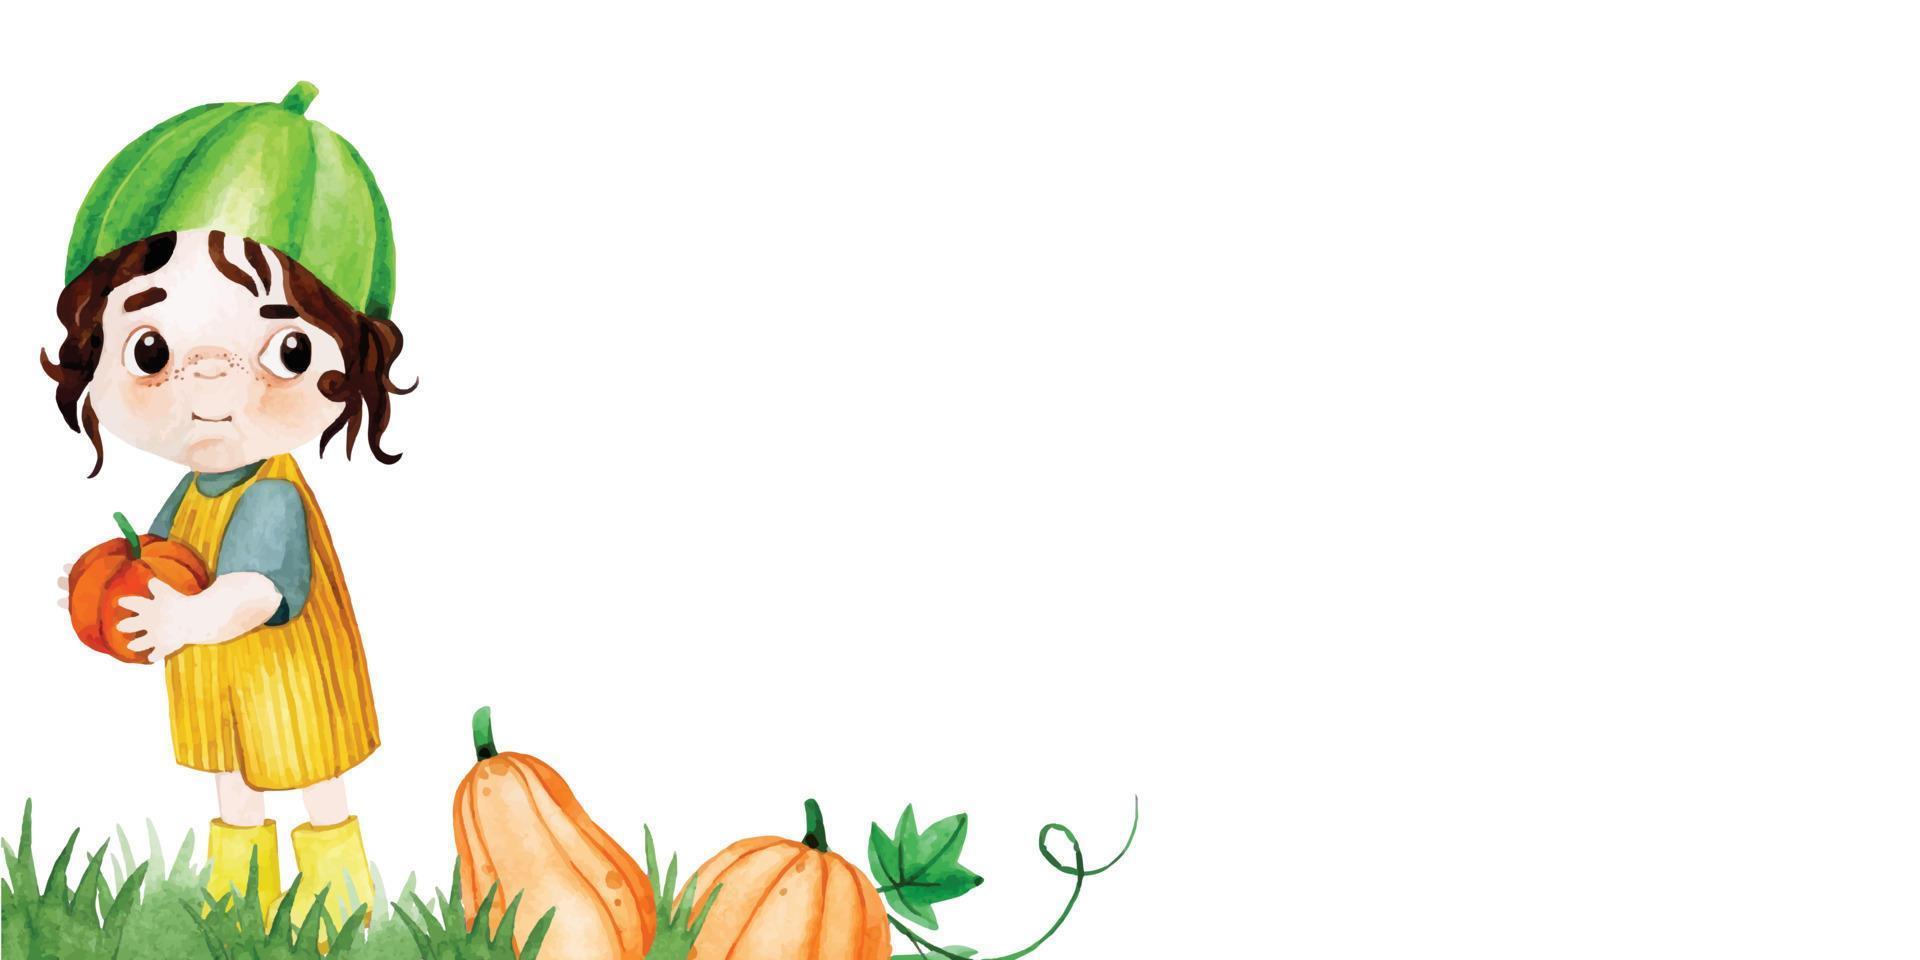 disegno ad acquerello, banner, cornice sul tema dell'autunno, giorno del ringraziamento. bambino carino in un costume da zucca, erba verde e zucche. Halloween vettore